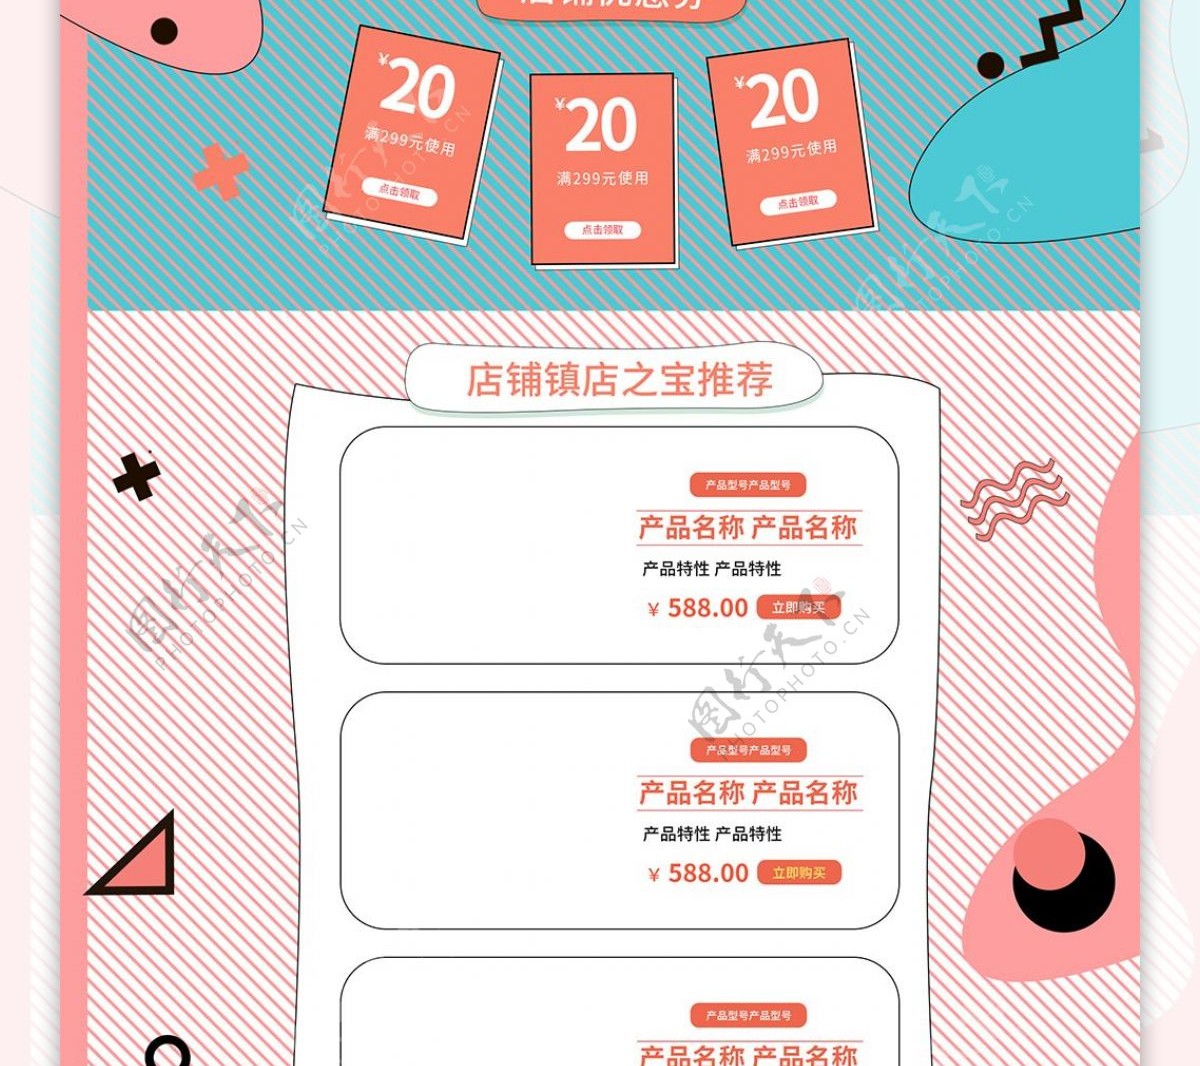 京东618店庆购物节蓝色手绘电商首页模板